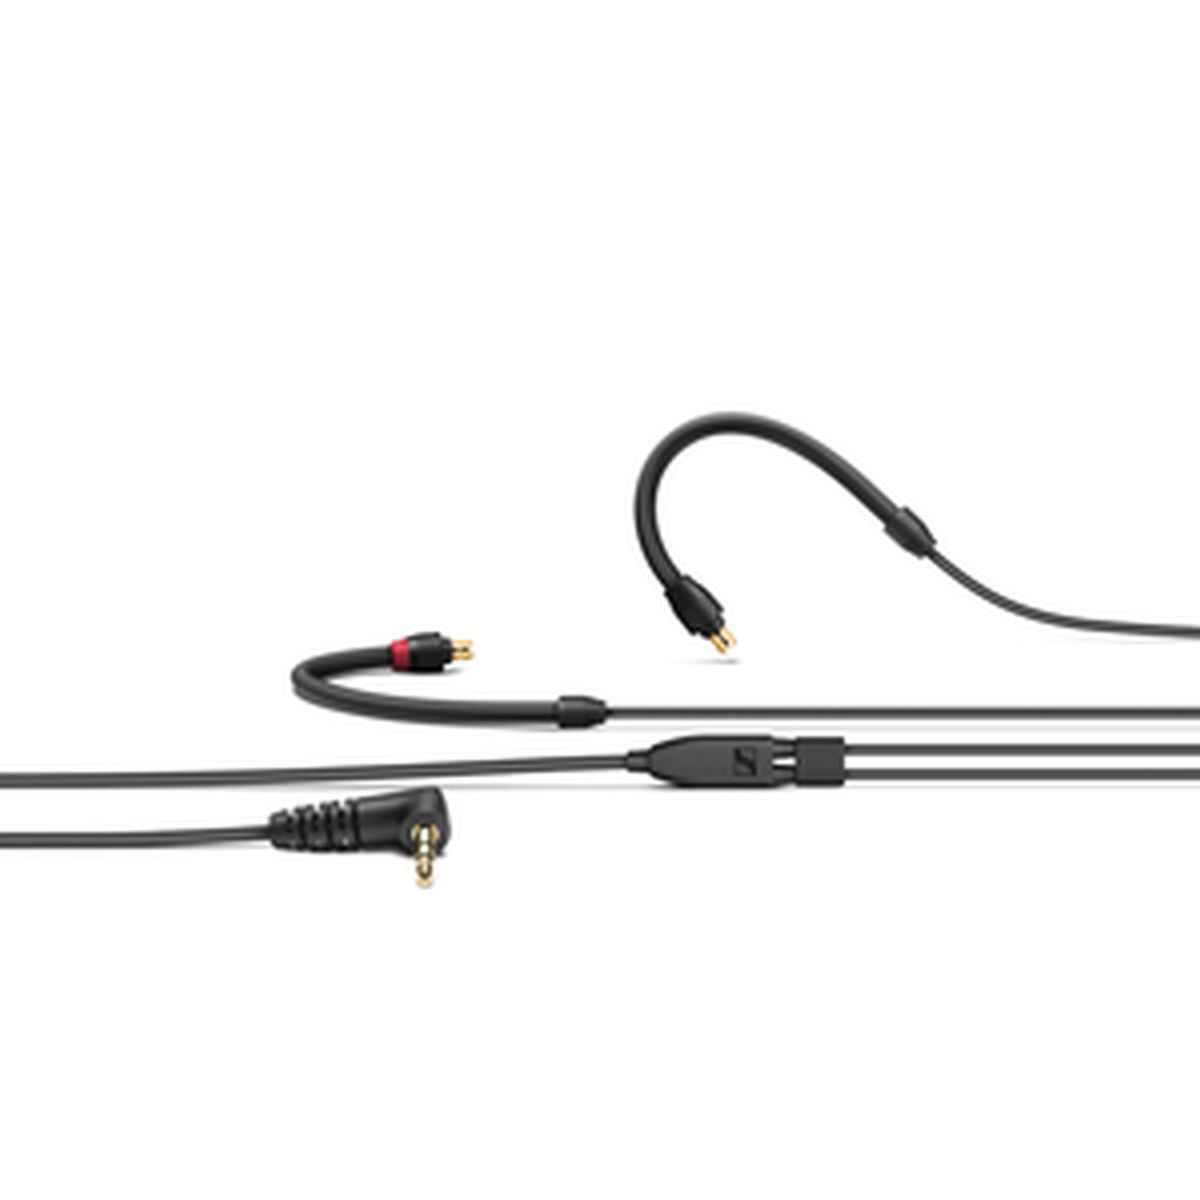 Sennheiser IE 100 PRO Wireless CLEAR Profi-In-Ear-Monitor/Kopfhörer